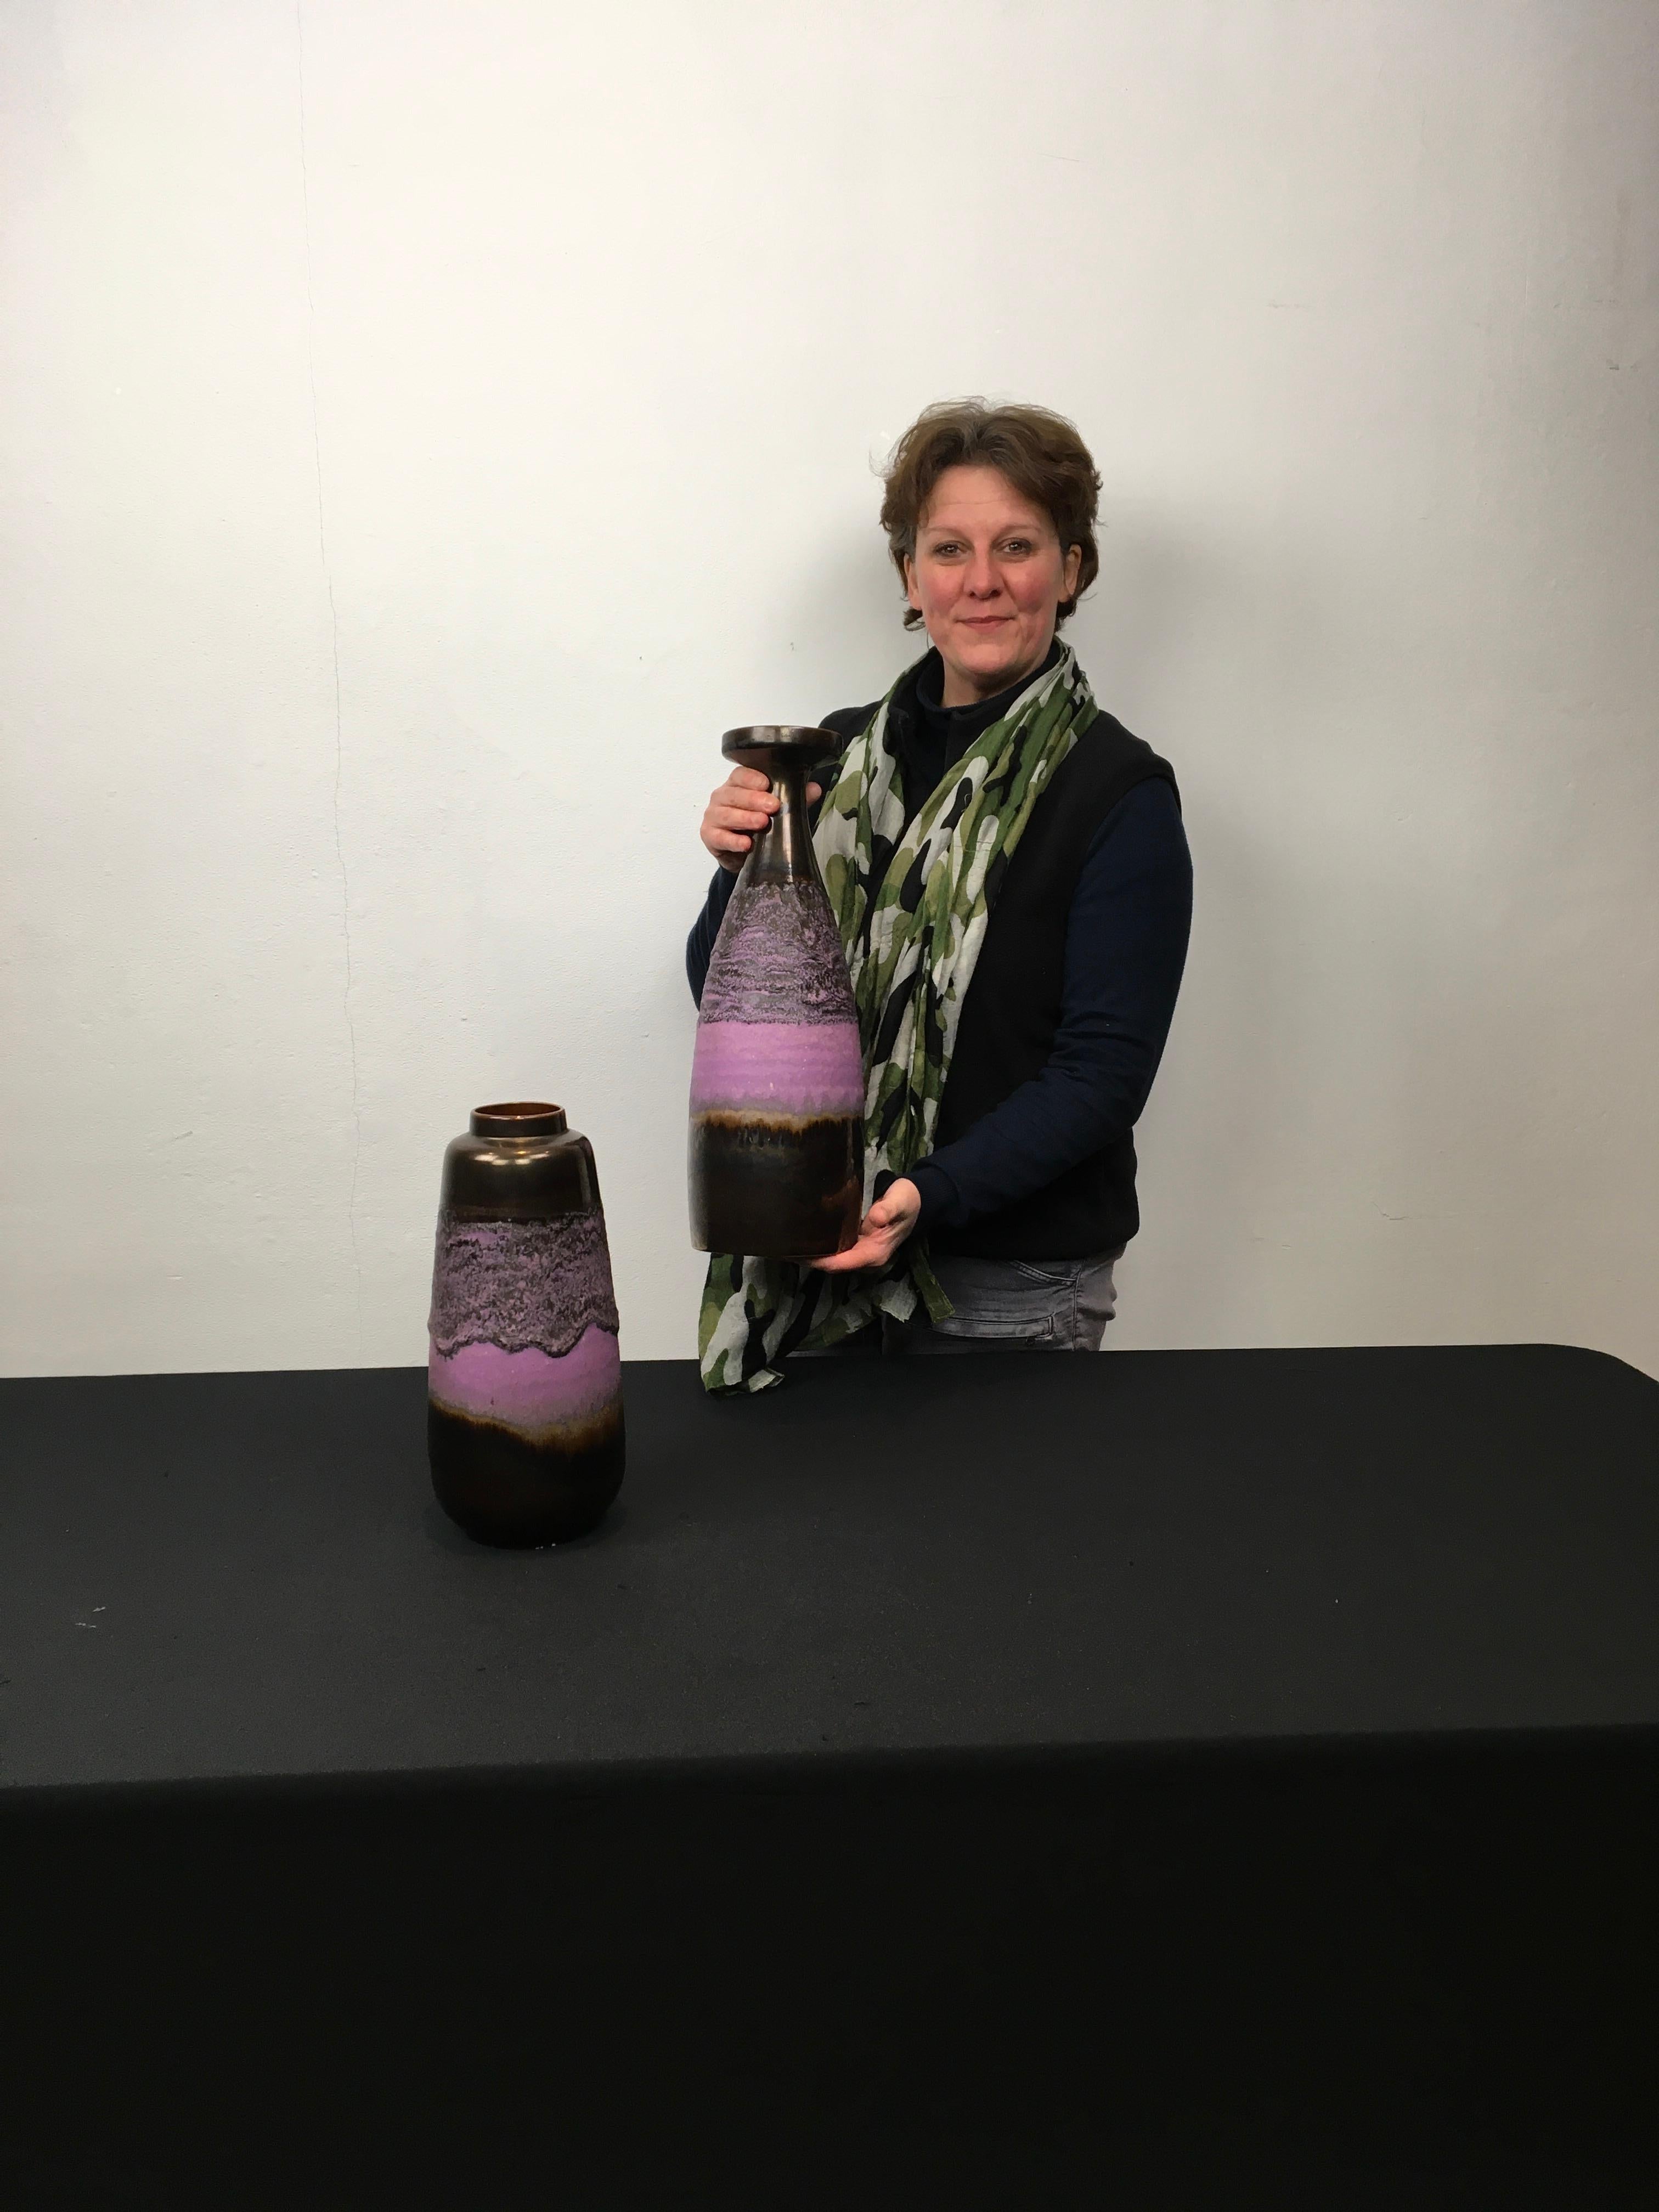 Ensemble de 2 vases violets. 
Vases des années 1970 de Scheurich Germany. 
Combinaison des couleurs marron et violet - Vases multicolores.
De style brutaliste, avec une épaisse glaçure de lave. 
Magnifique ensemble avec 2 dimensions et un design